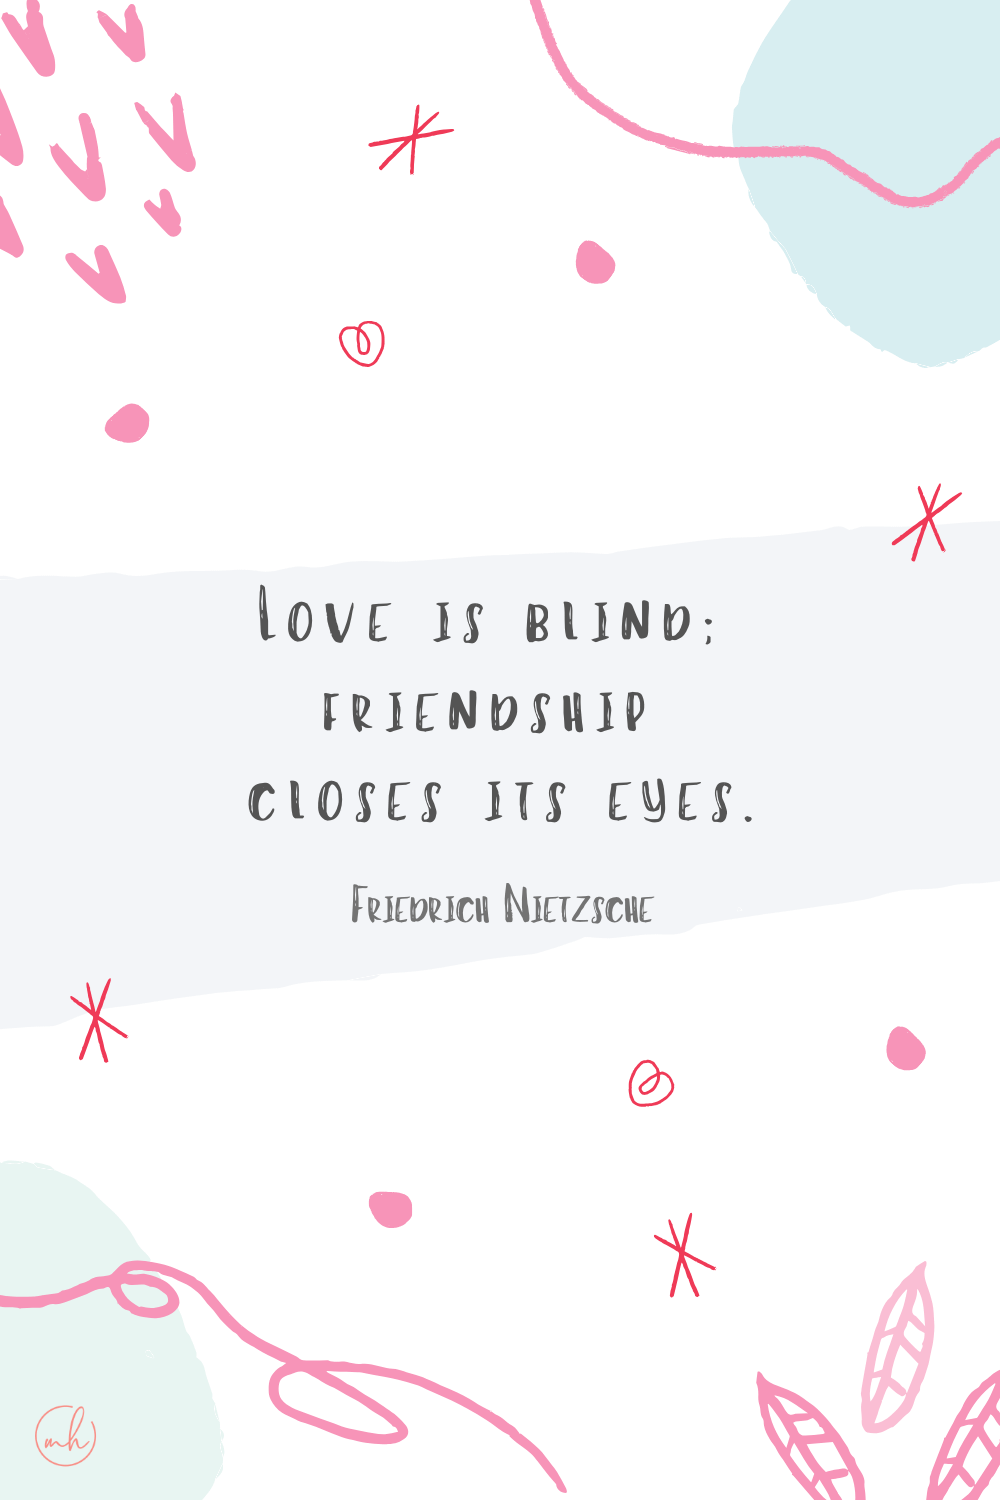 “Love is blind; friendship closes its eyes.” - Friedrich Nietzsche